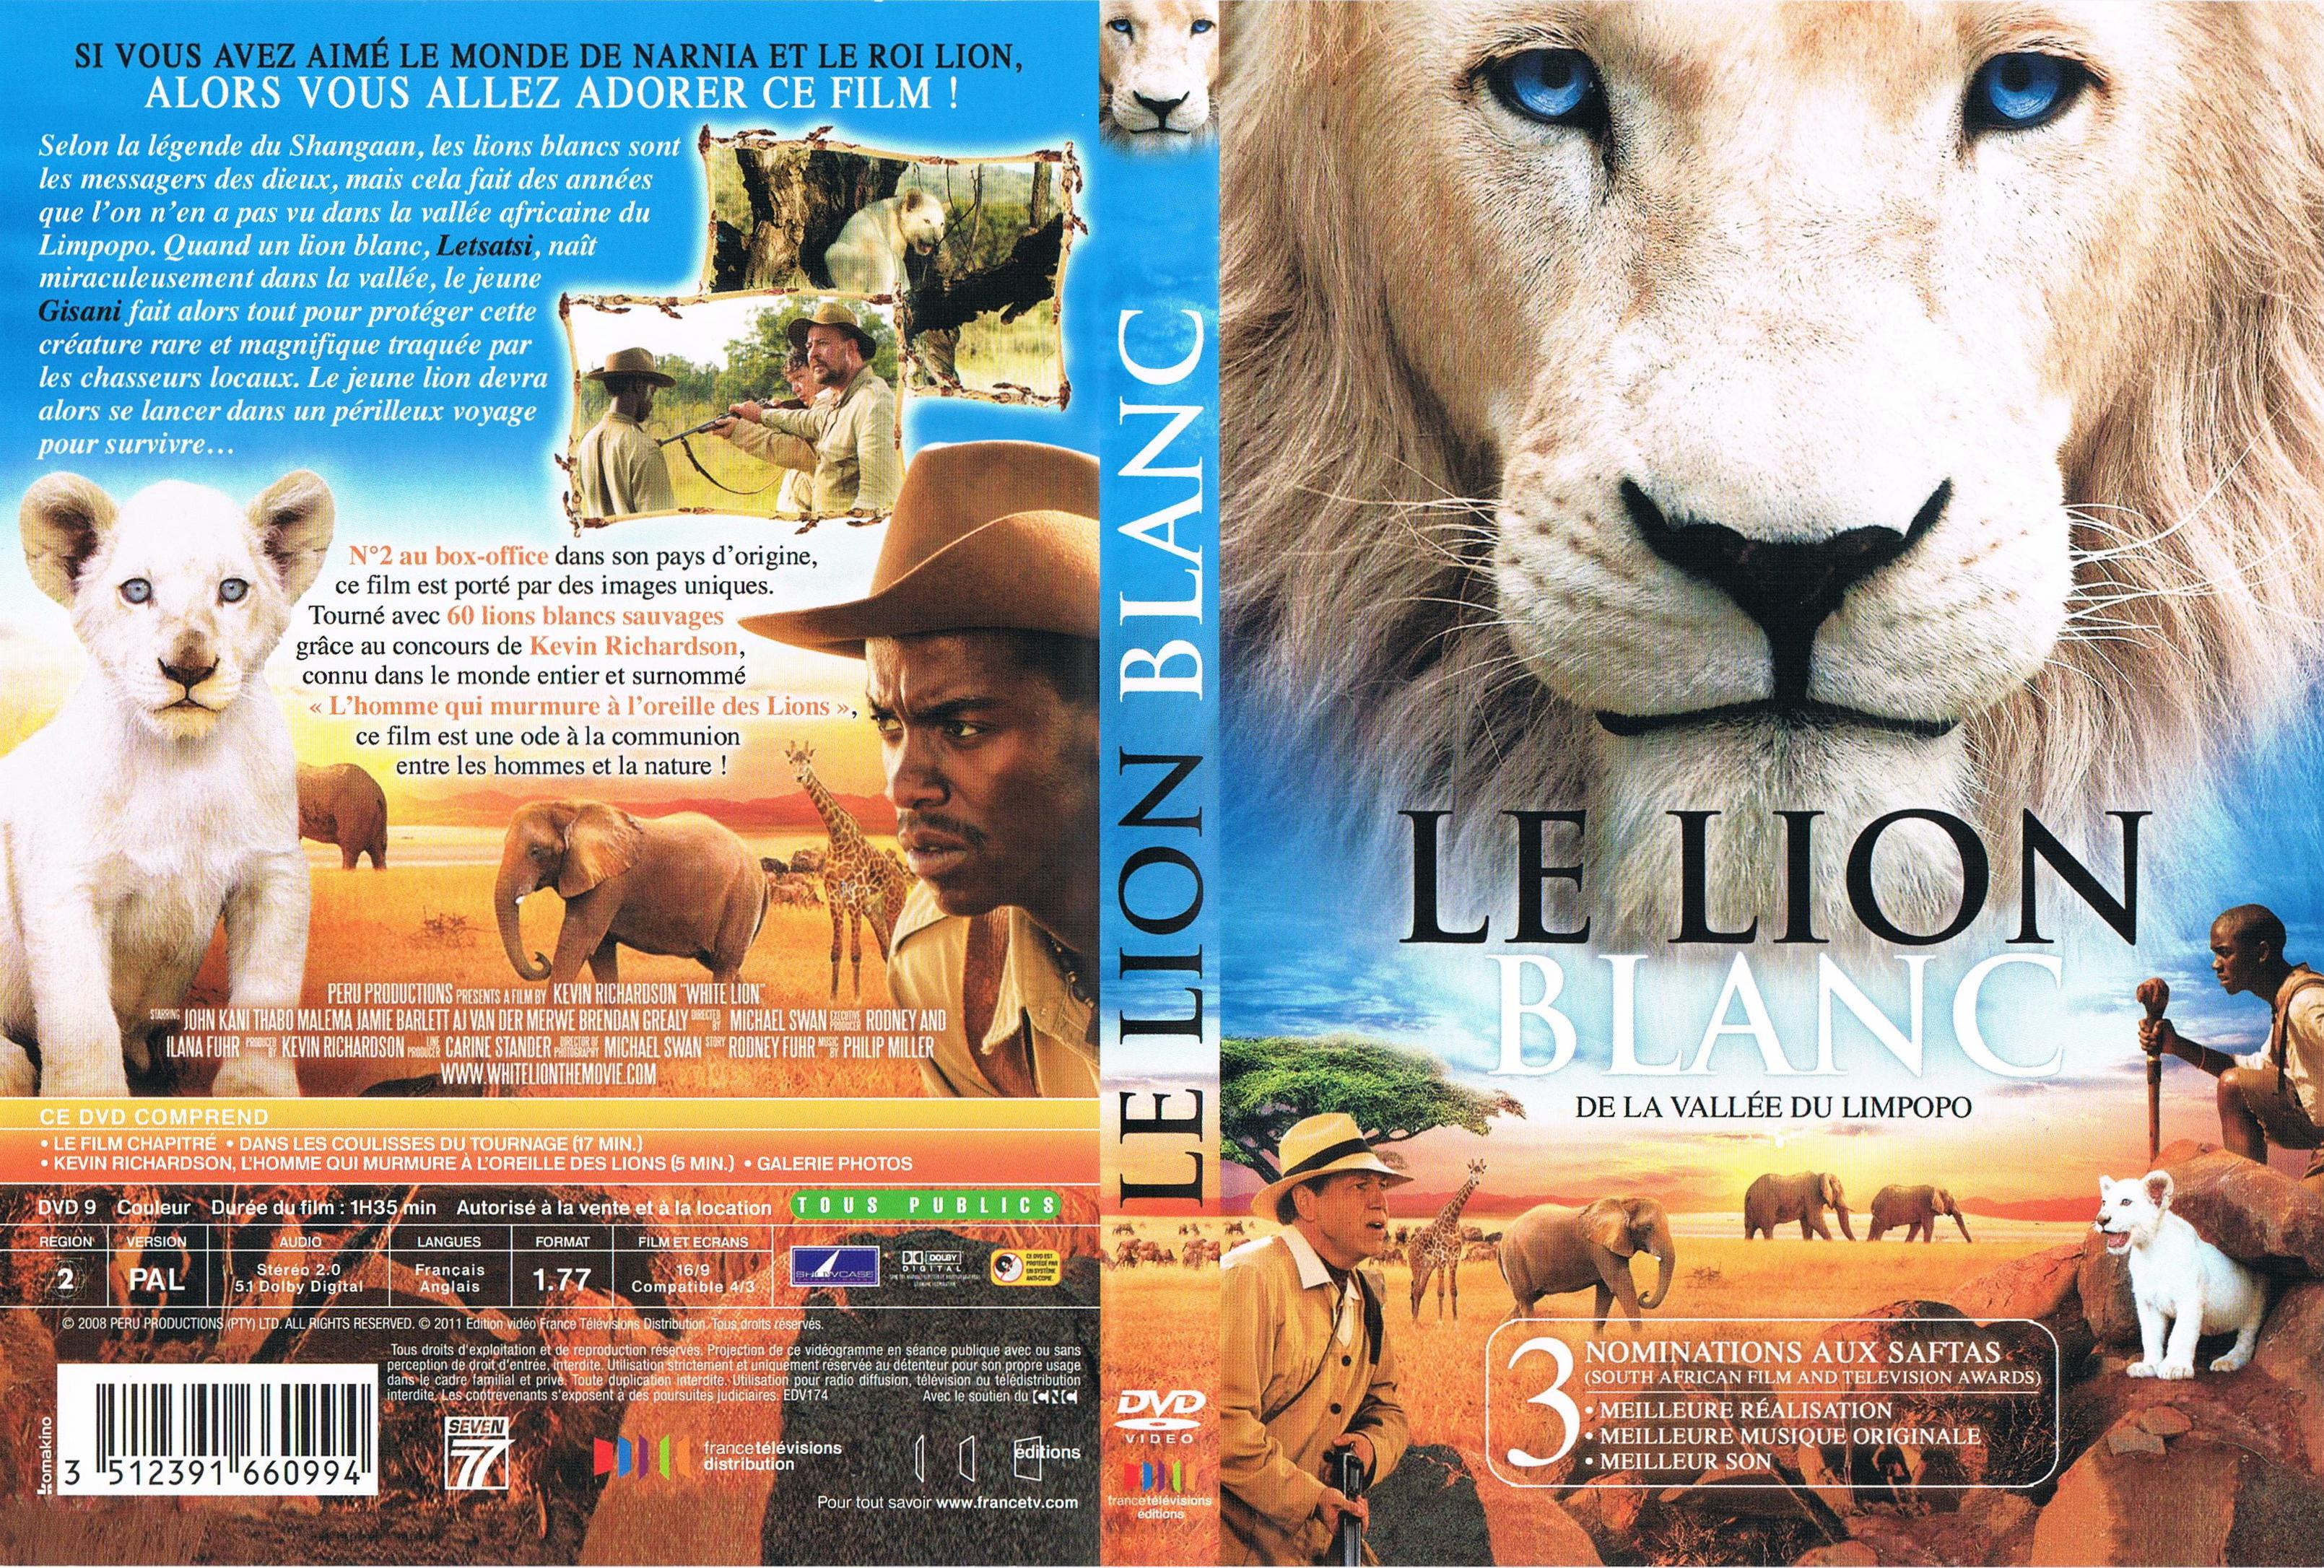 Jaquette DVD Le lion blanc de la vallee du Limpopo